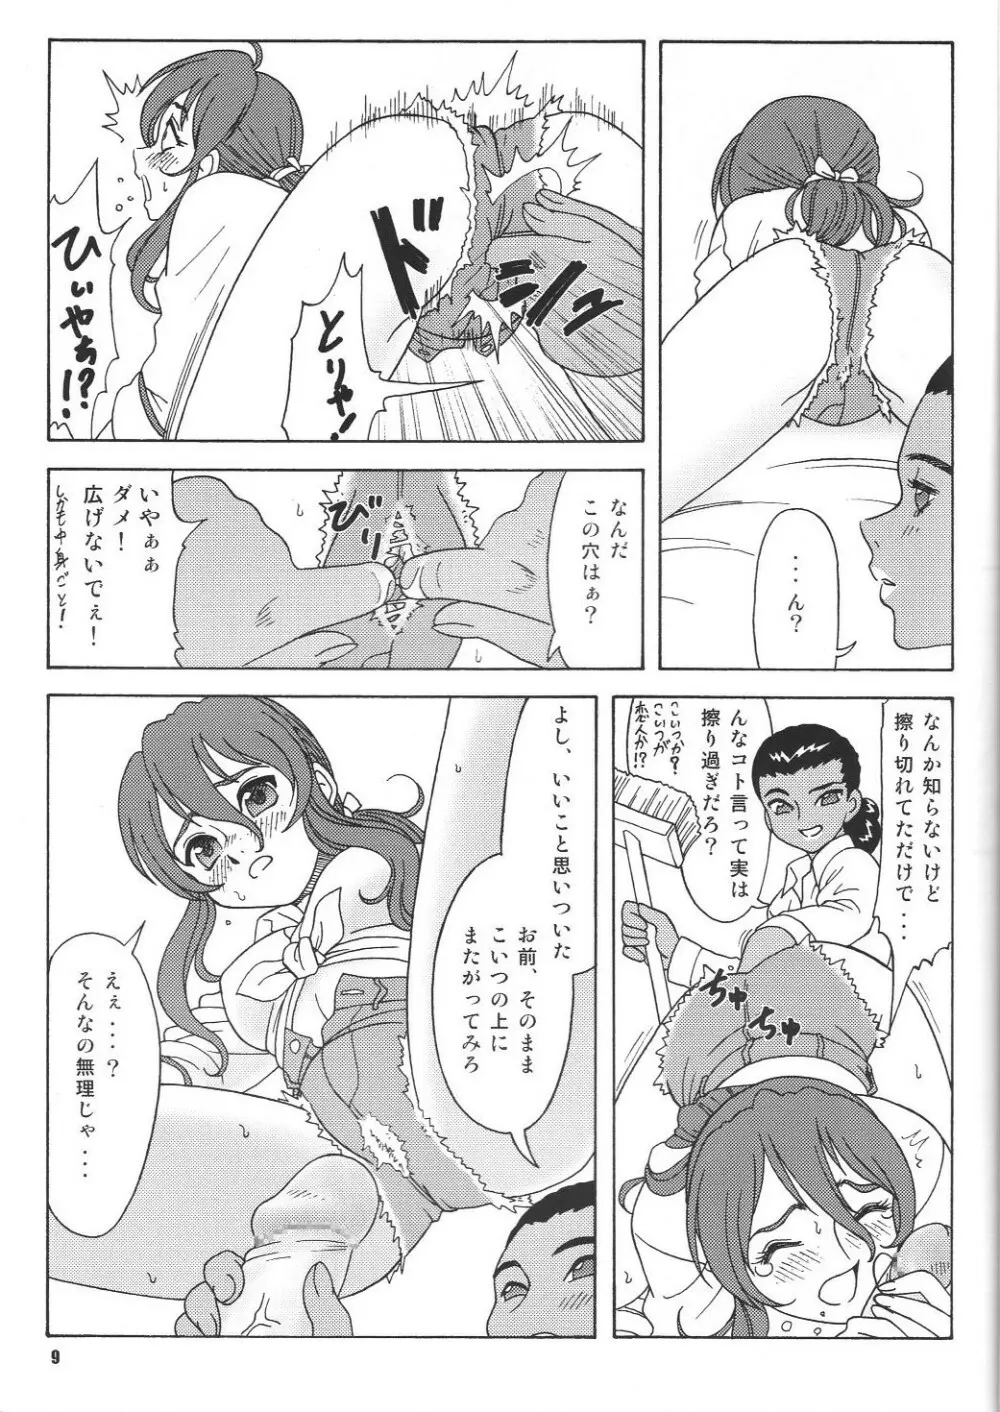 Fujishima Spirits vol.6 8ページ